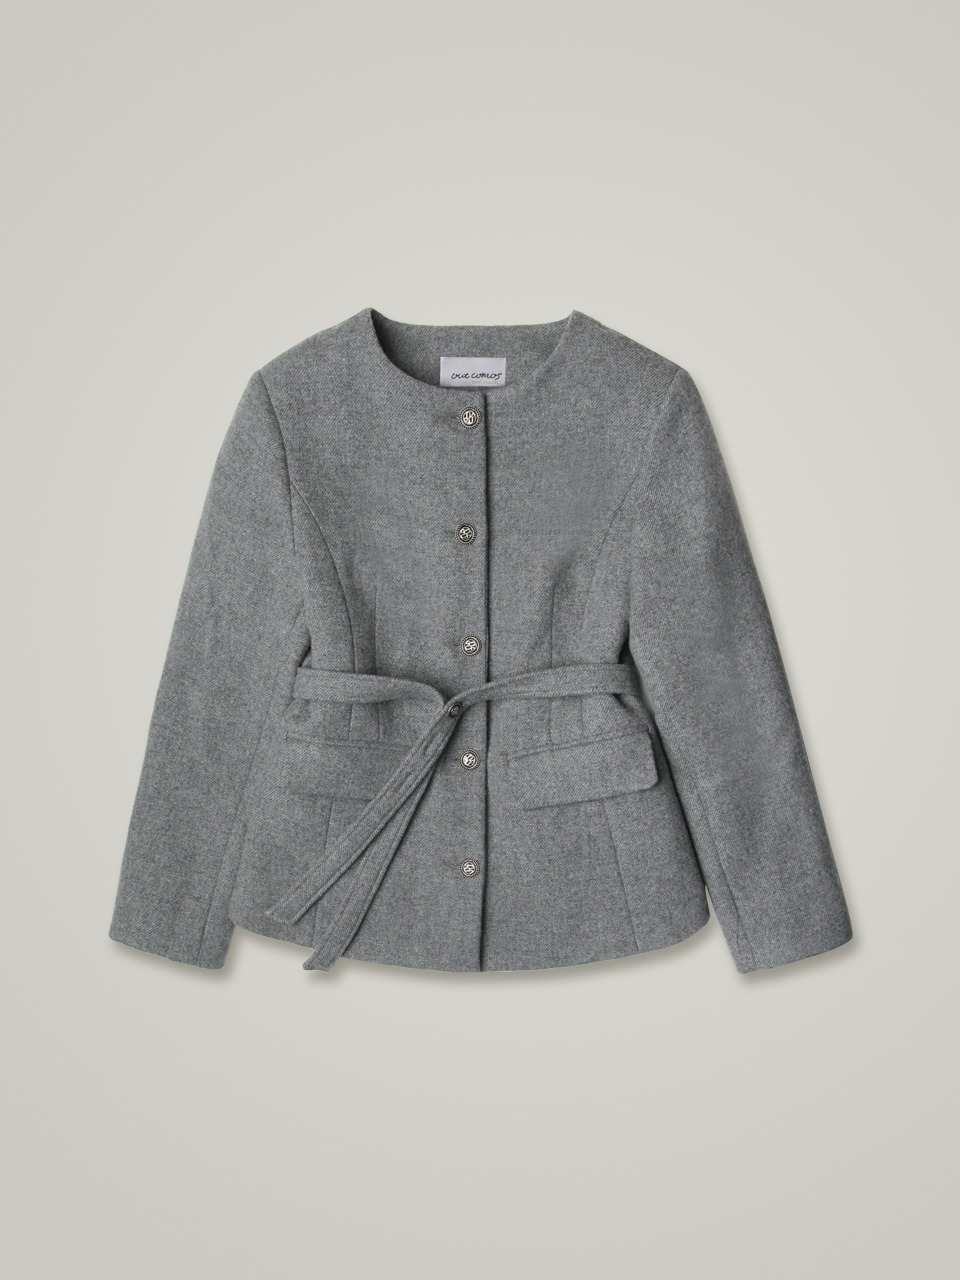 comos 773 no collar wool twill half jacket (melange gray)